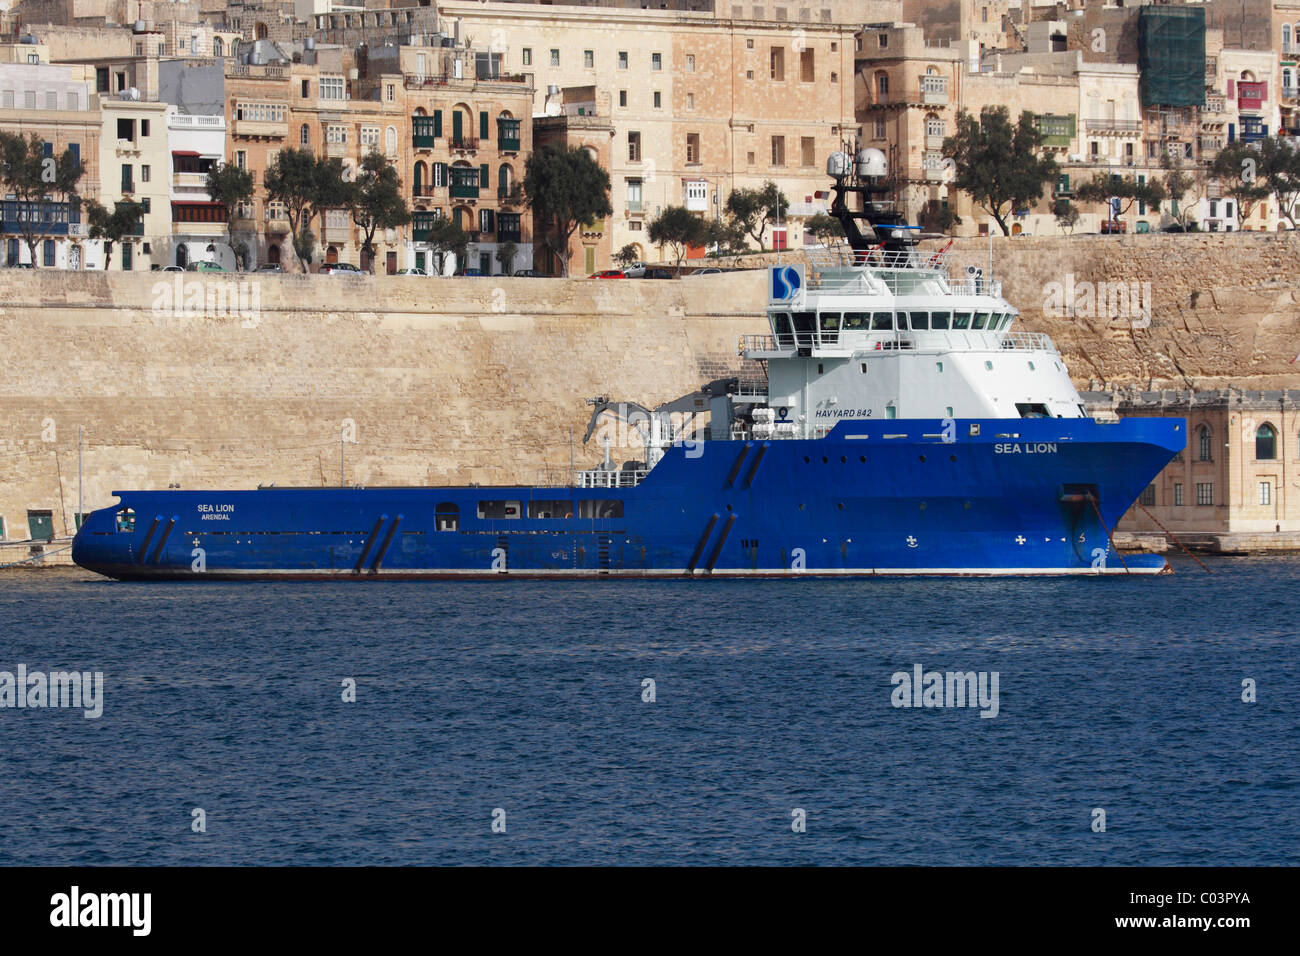 The tug Sea Lion in Malta's Grand Harbour Stock Photo